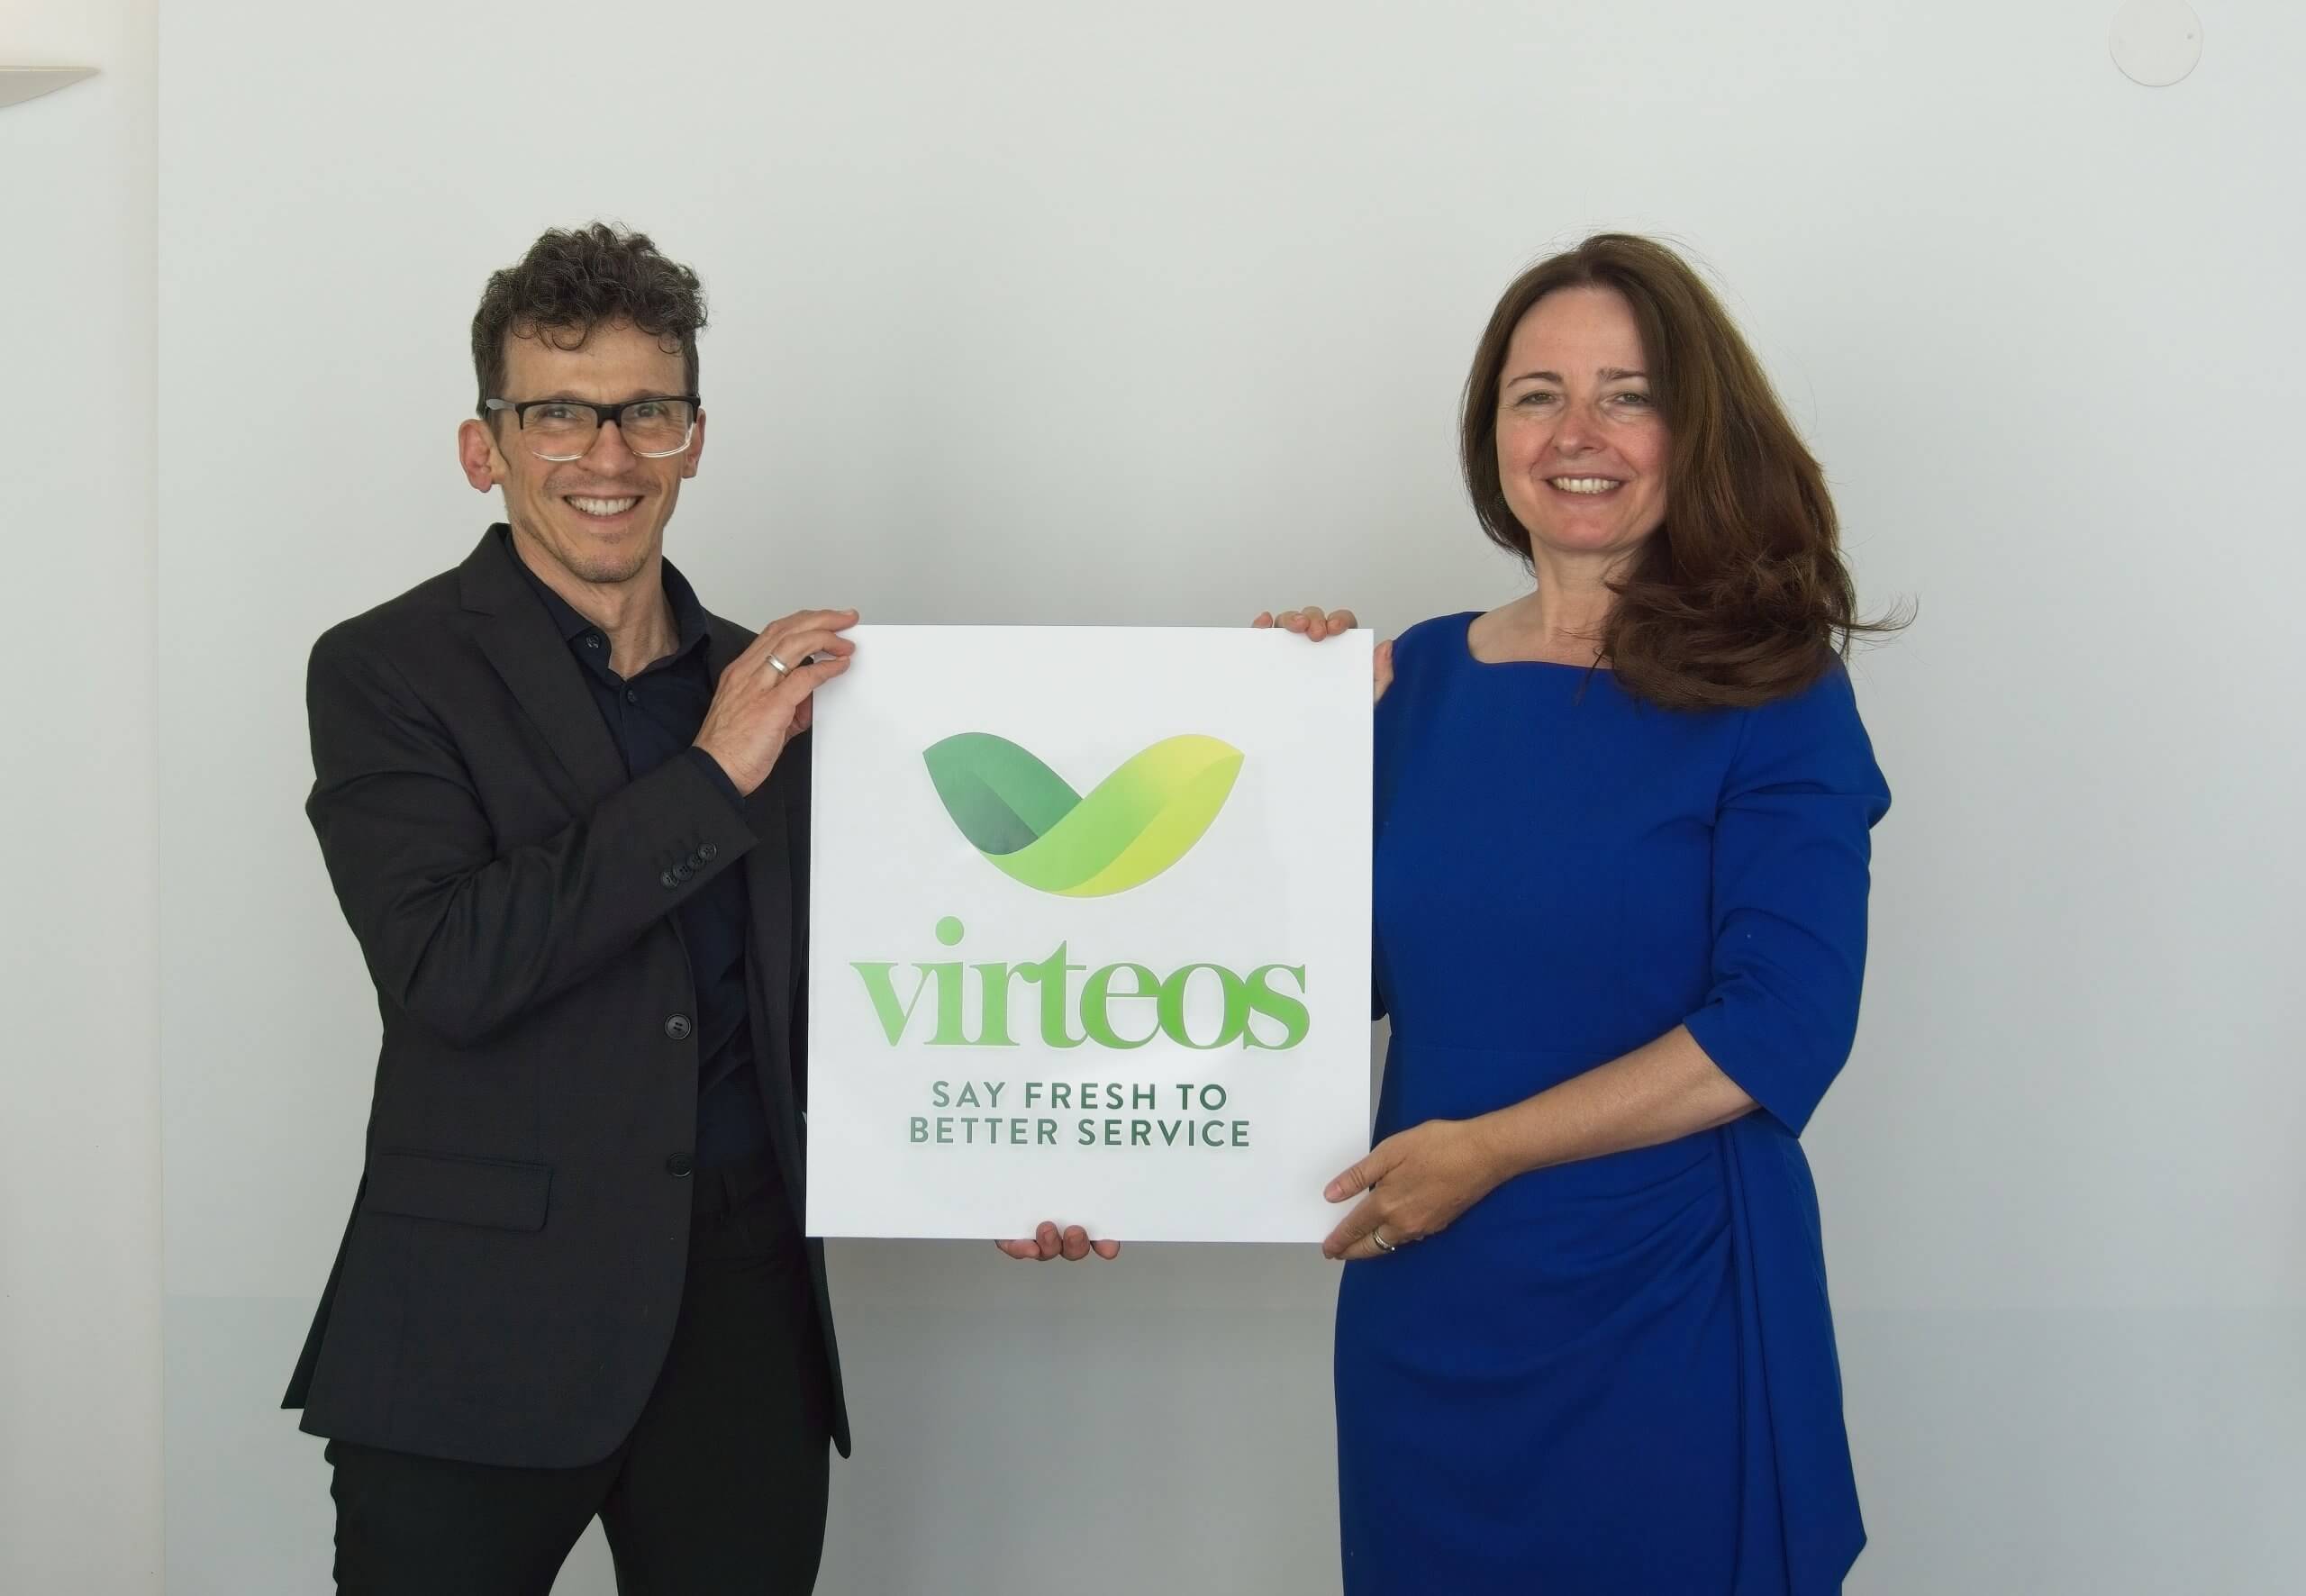 Stephanos Berger und Herta Vanas präsentieren die neue Marke virteos